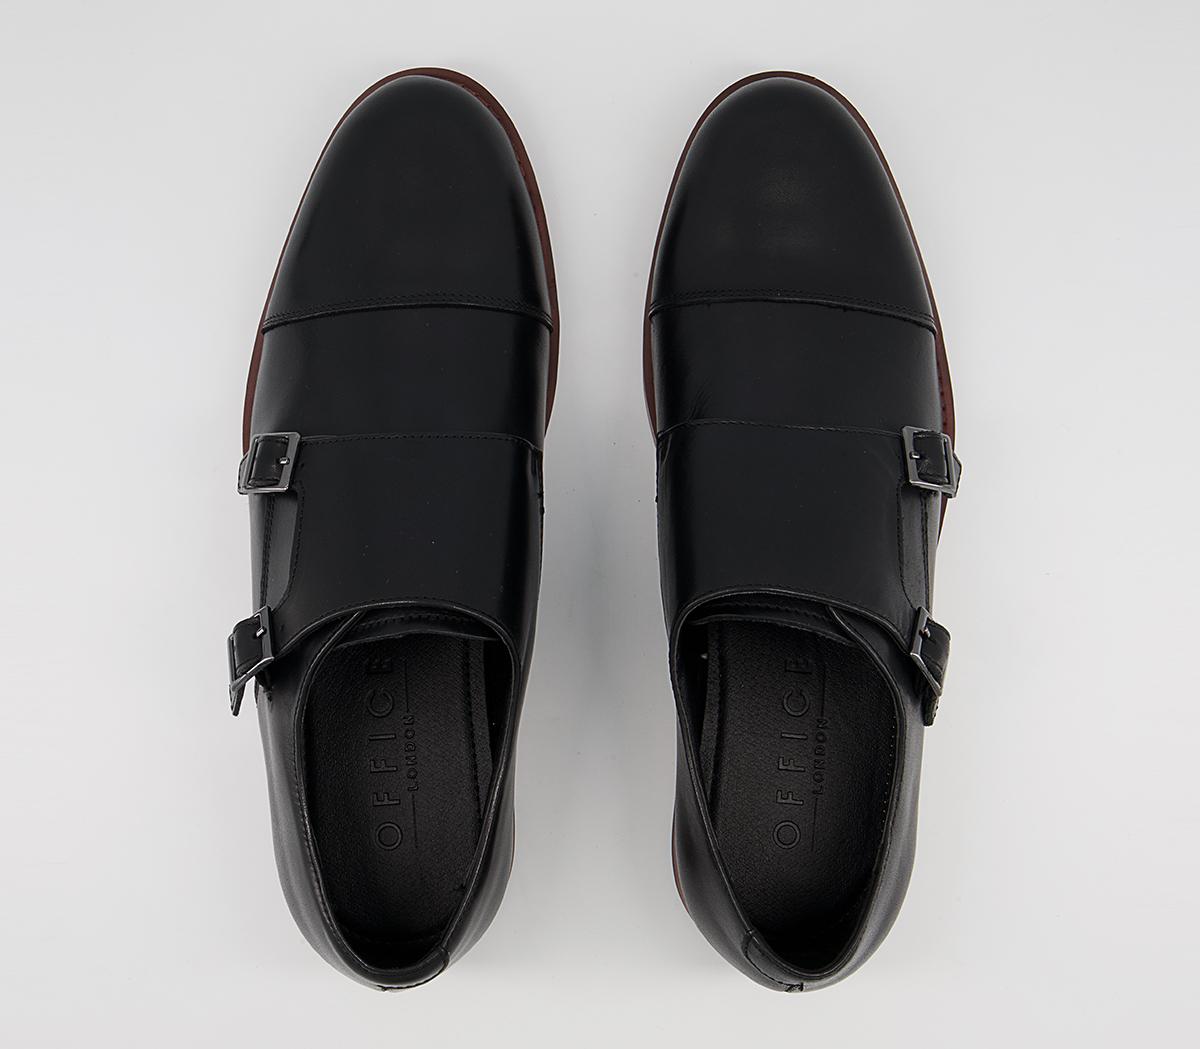 OFFICE Malvern Toecap Monk Shoes Black Leather - Men’s Smart Shoes